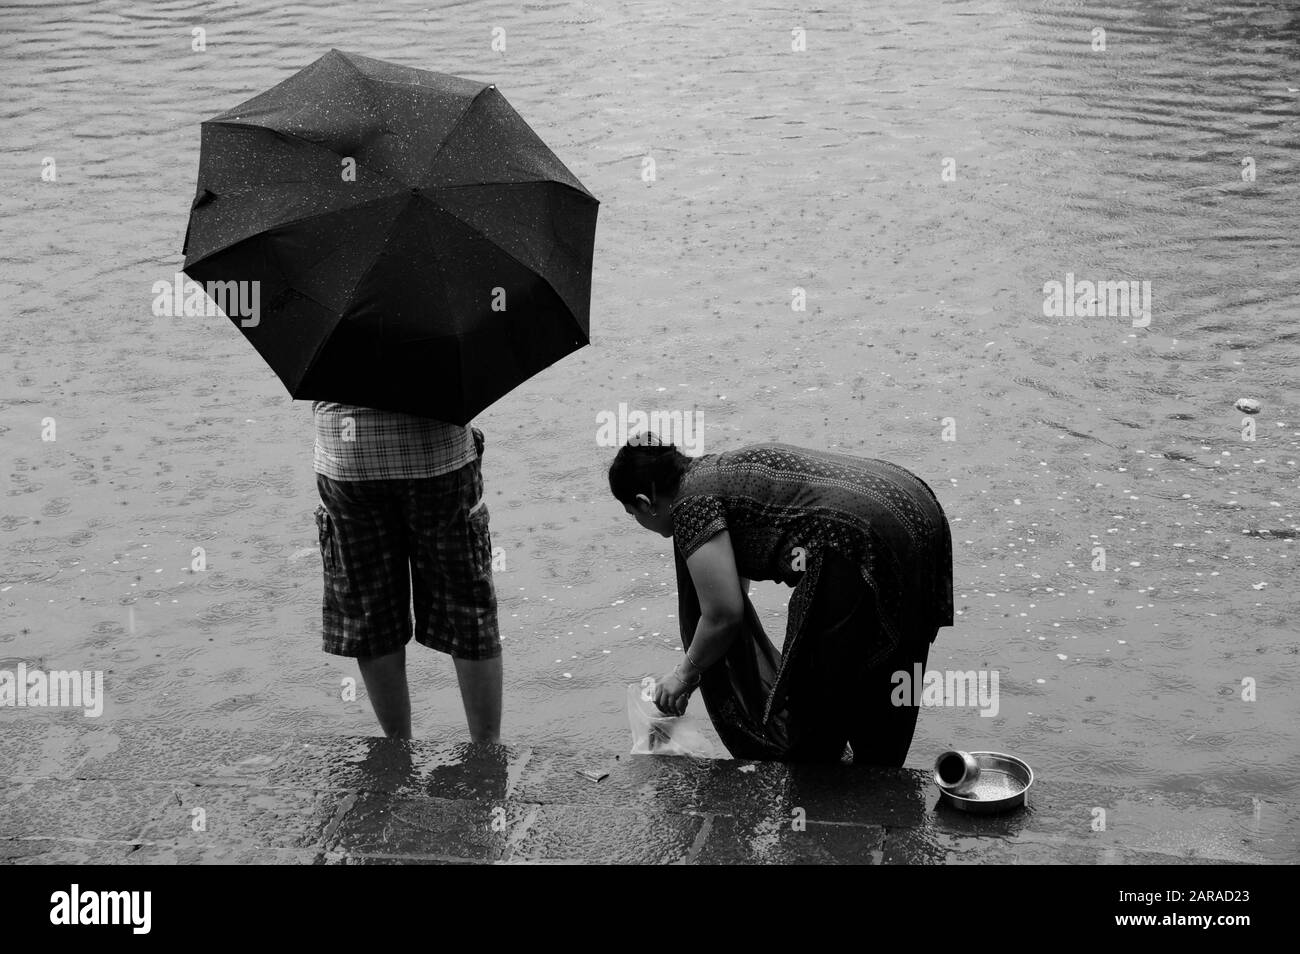 Homme sous parapluie, femme se mouiller, réservoir d'eau Banganga, Walkeshwar, Malabar Hill, Mumbai, Maharashtra, Inde, Asie Banque D'Images